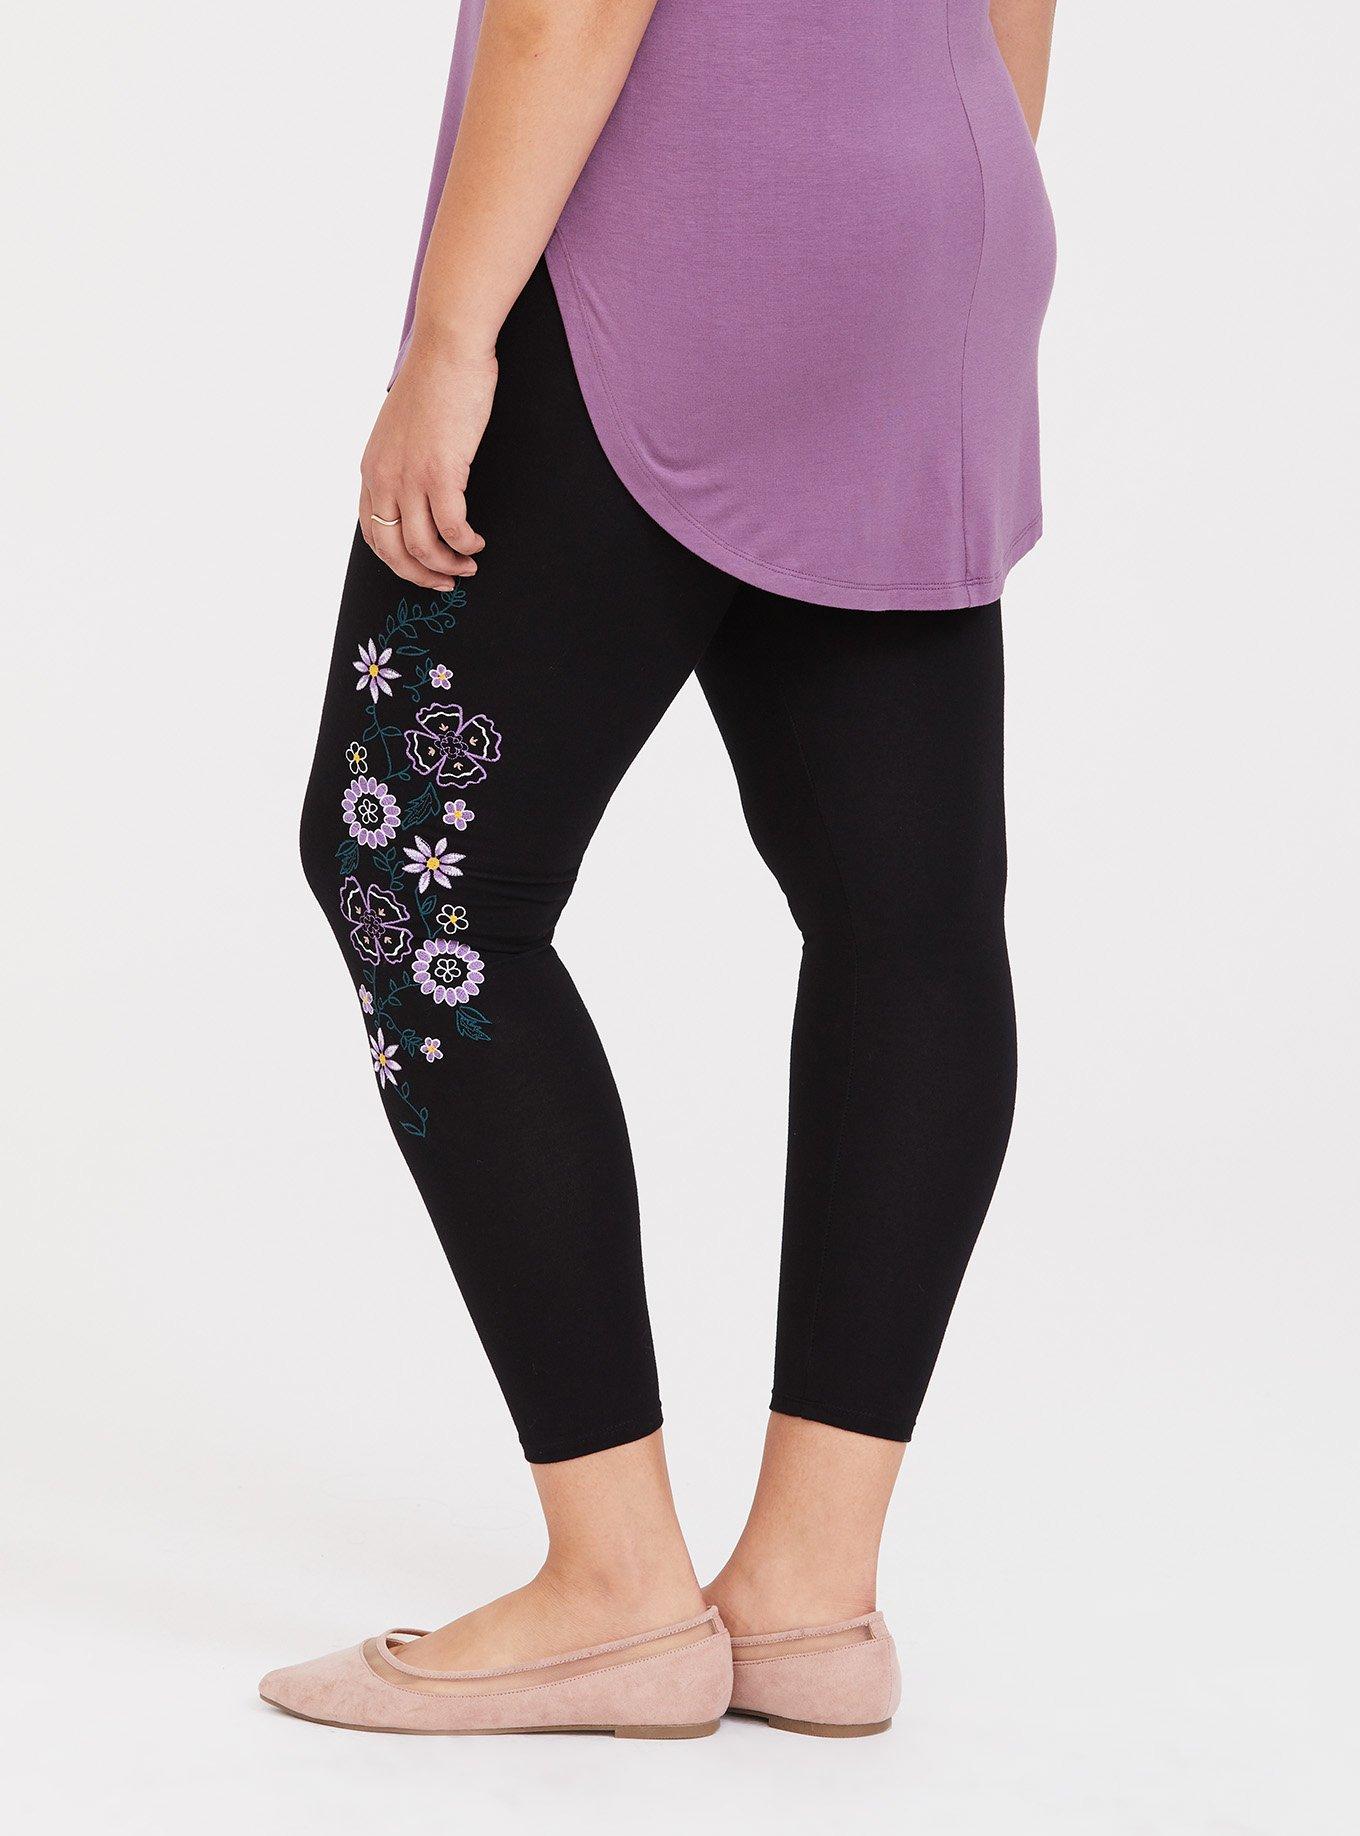 Plus Size - Crop Premium Legging - Embroidered Floral Black - Torrid